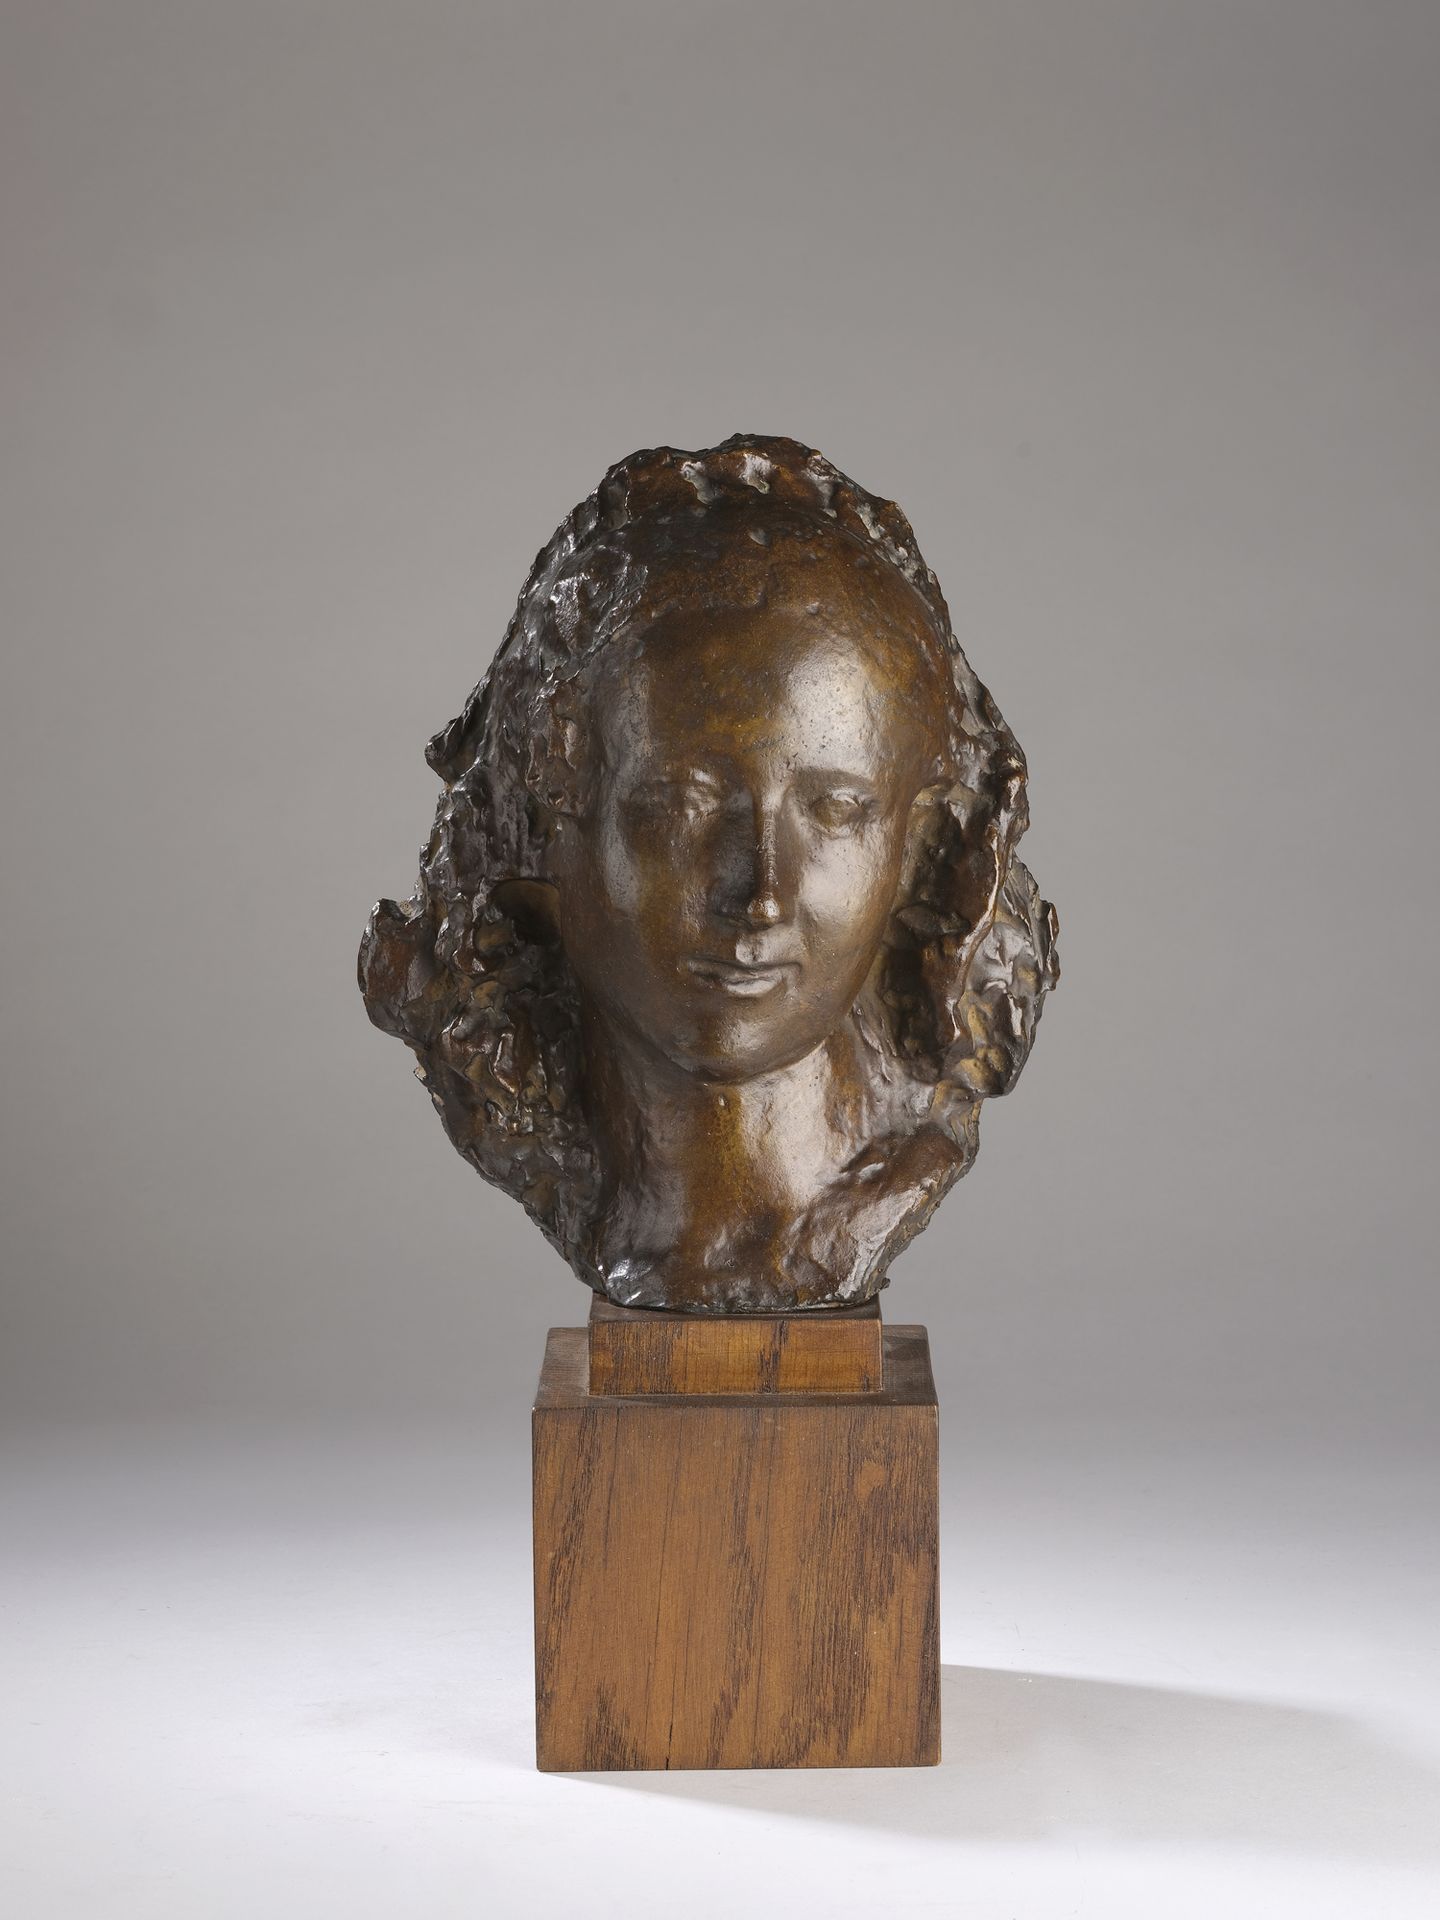 Null Jean OSOUF (1898-1996)

Maske von Coralie

1935-1945

Bronze mit hellbraune&hellip;